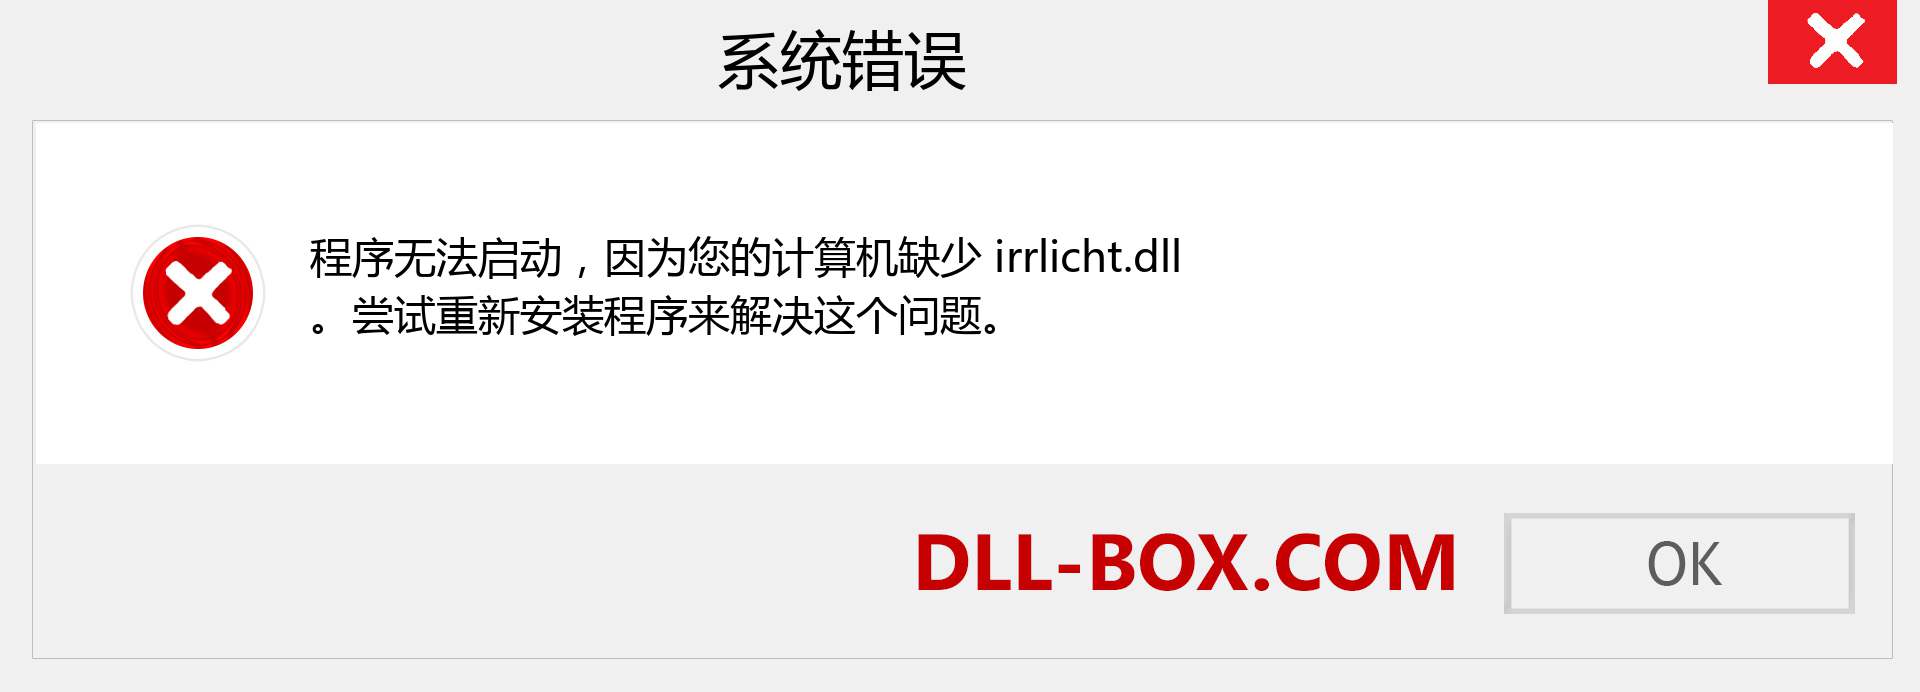 irrlicht.dll 文件丢失？。 适用于 Windows 7、8、10 的下载 - 修复 Windows、照片、图像上的 irrlicht dll 丢失错误